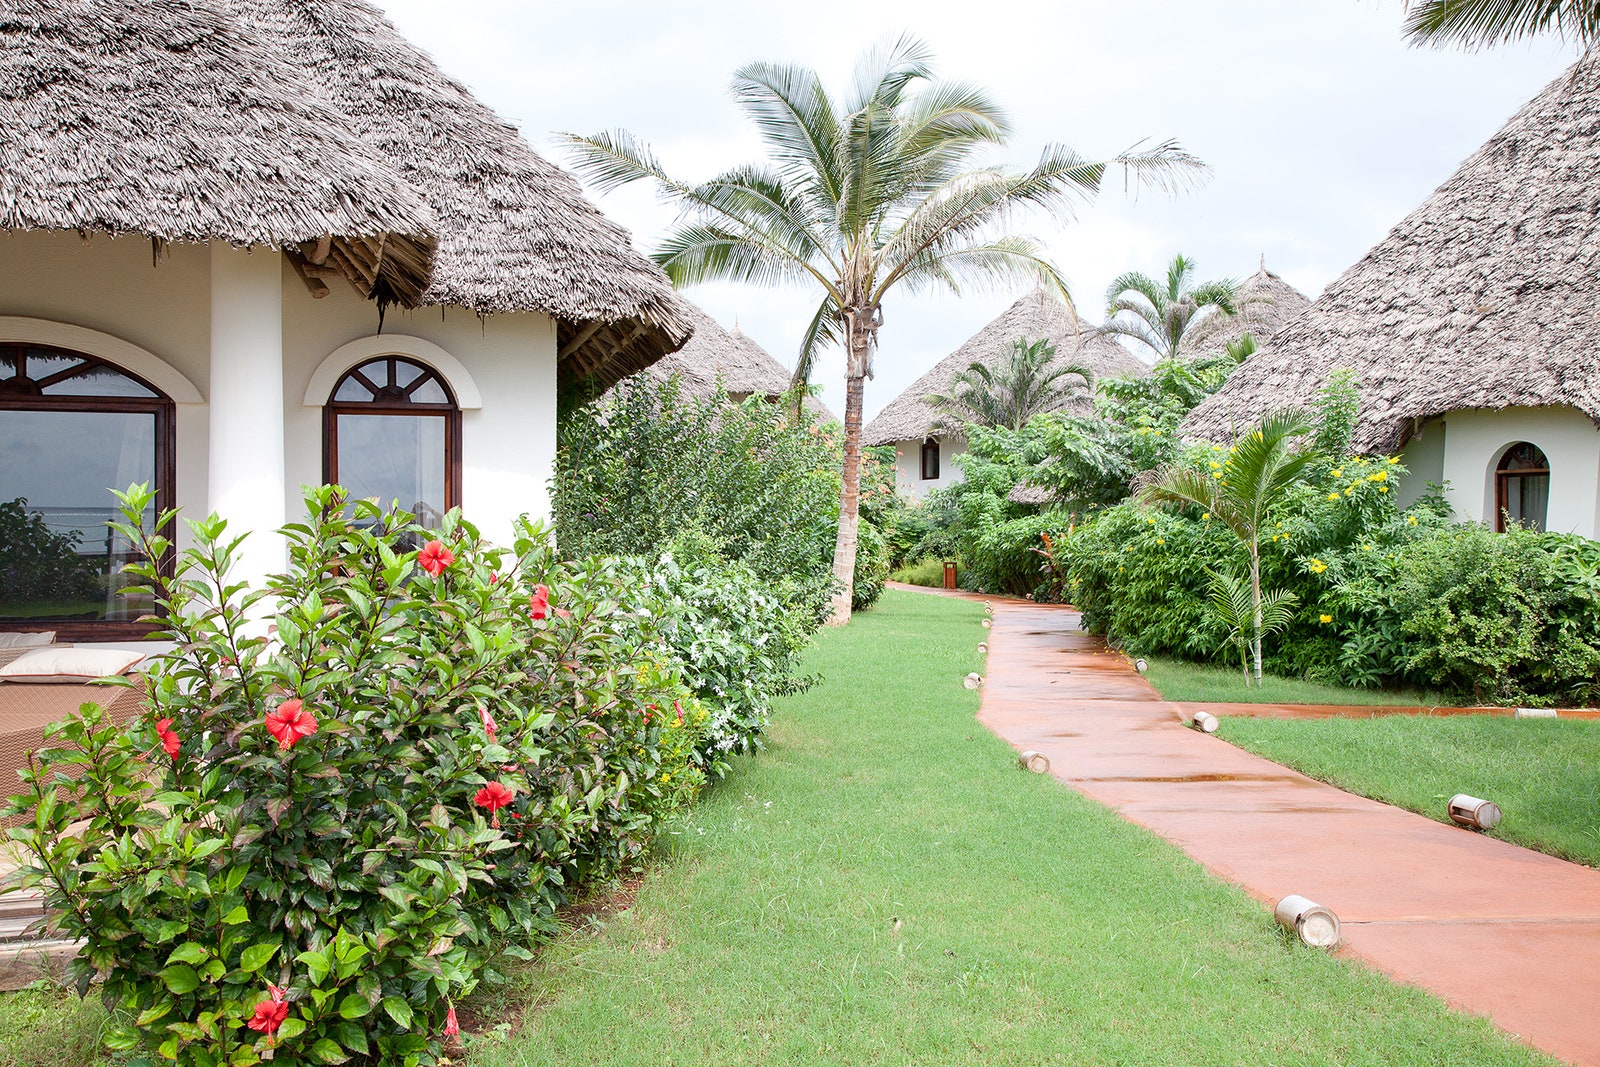 Отдых в Танзании 5 дизайнерских отелей Занзибара